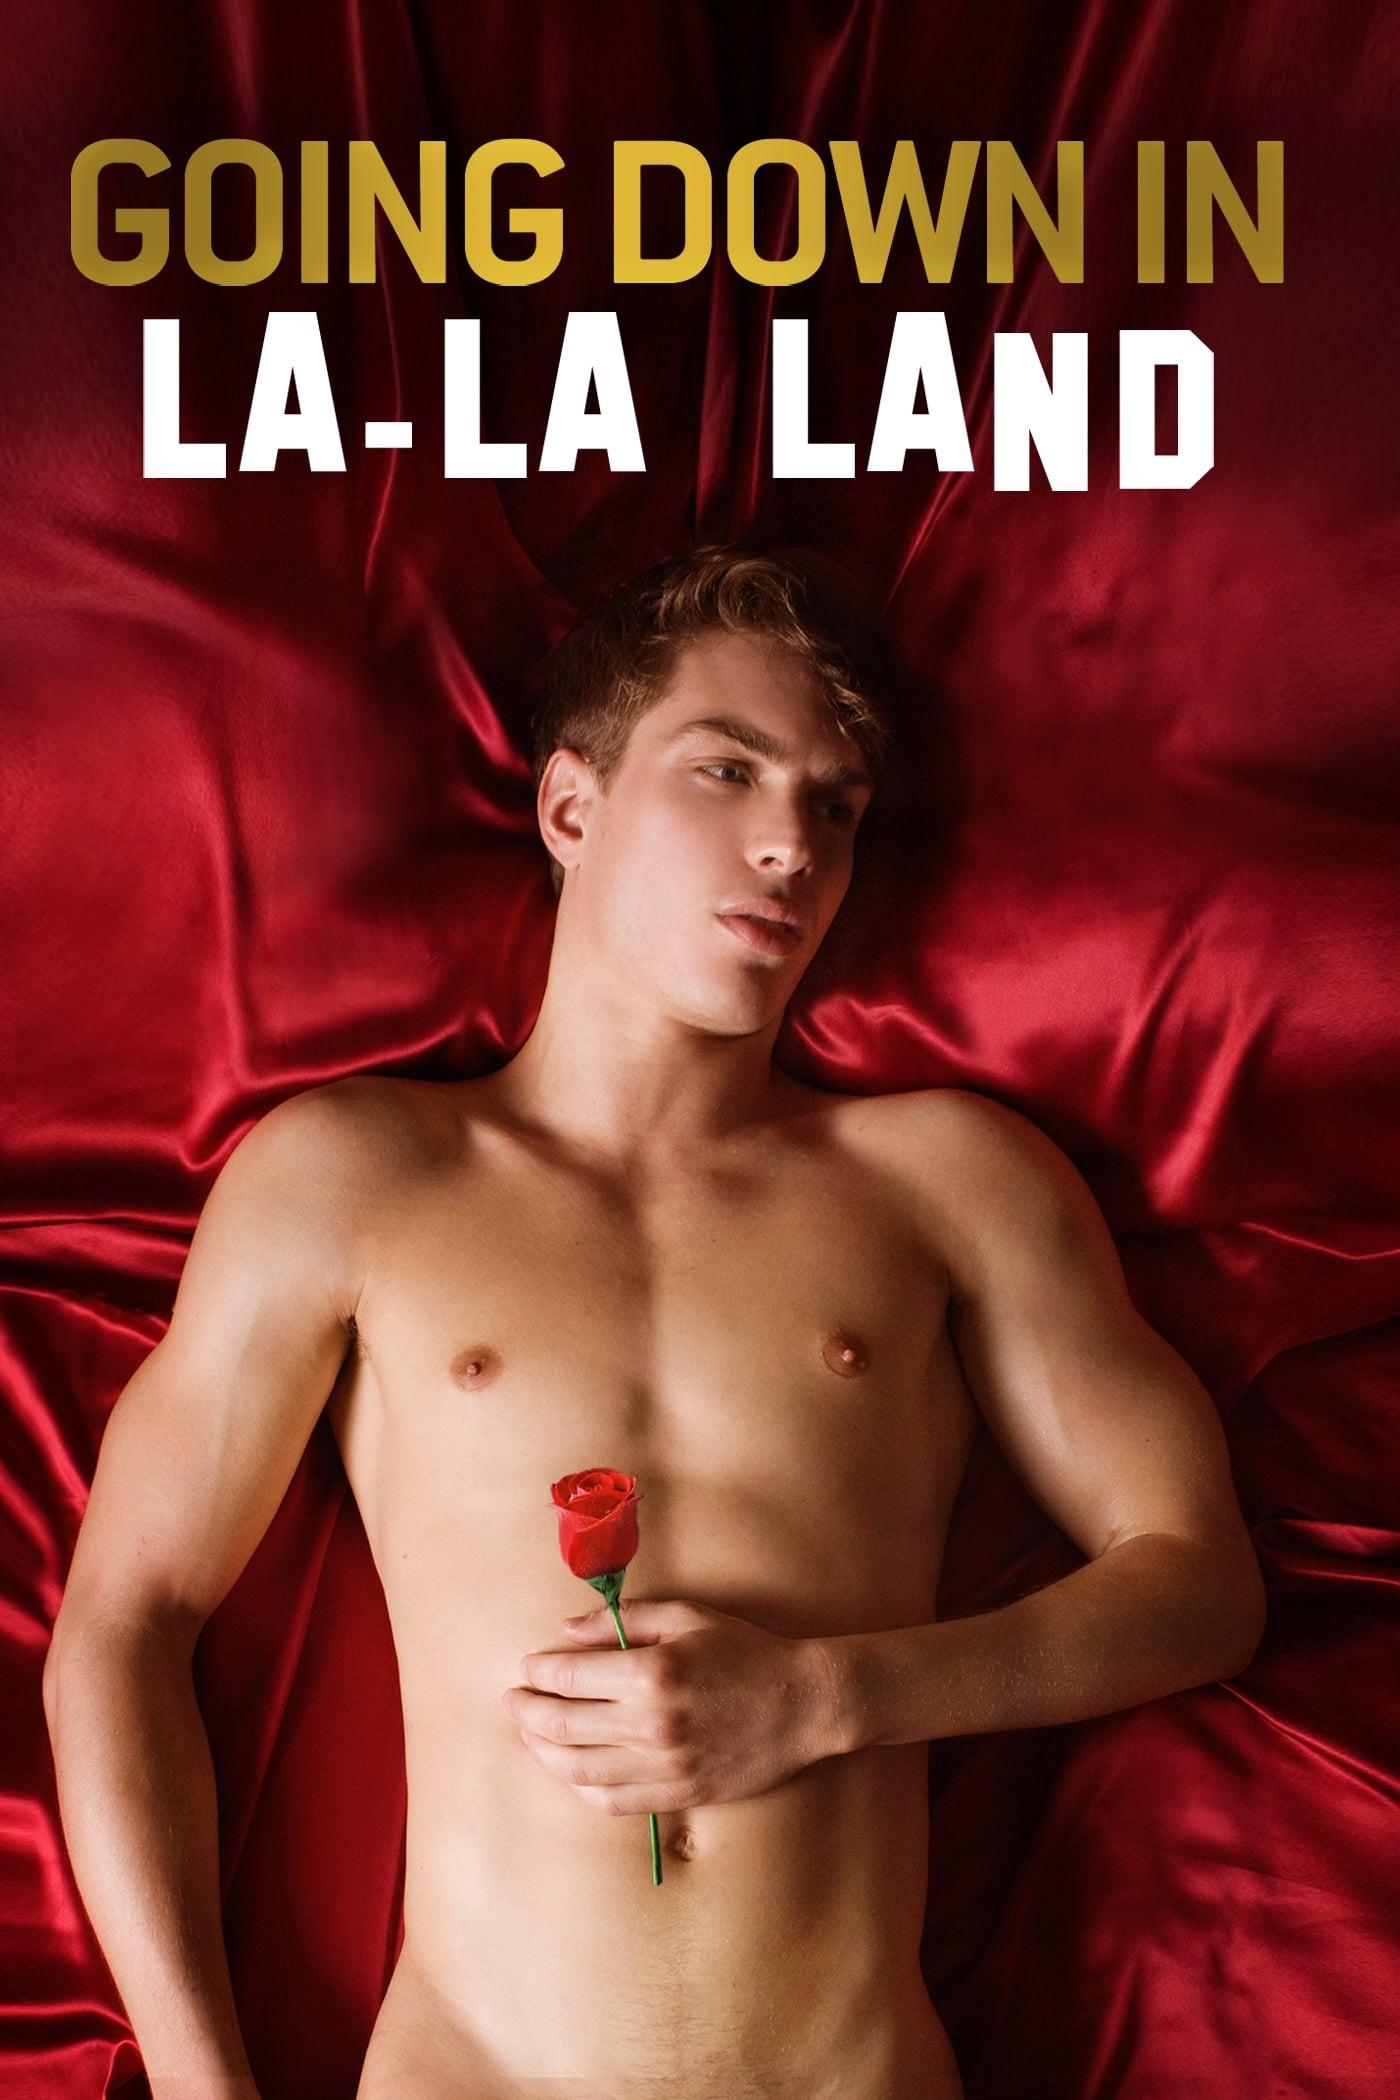 La-La Land poster